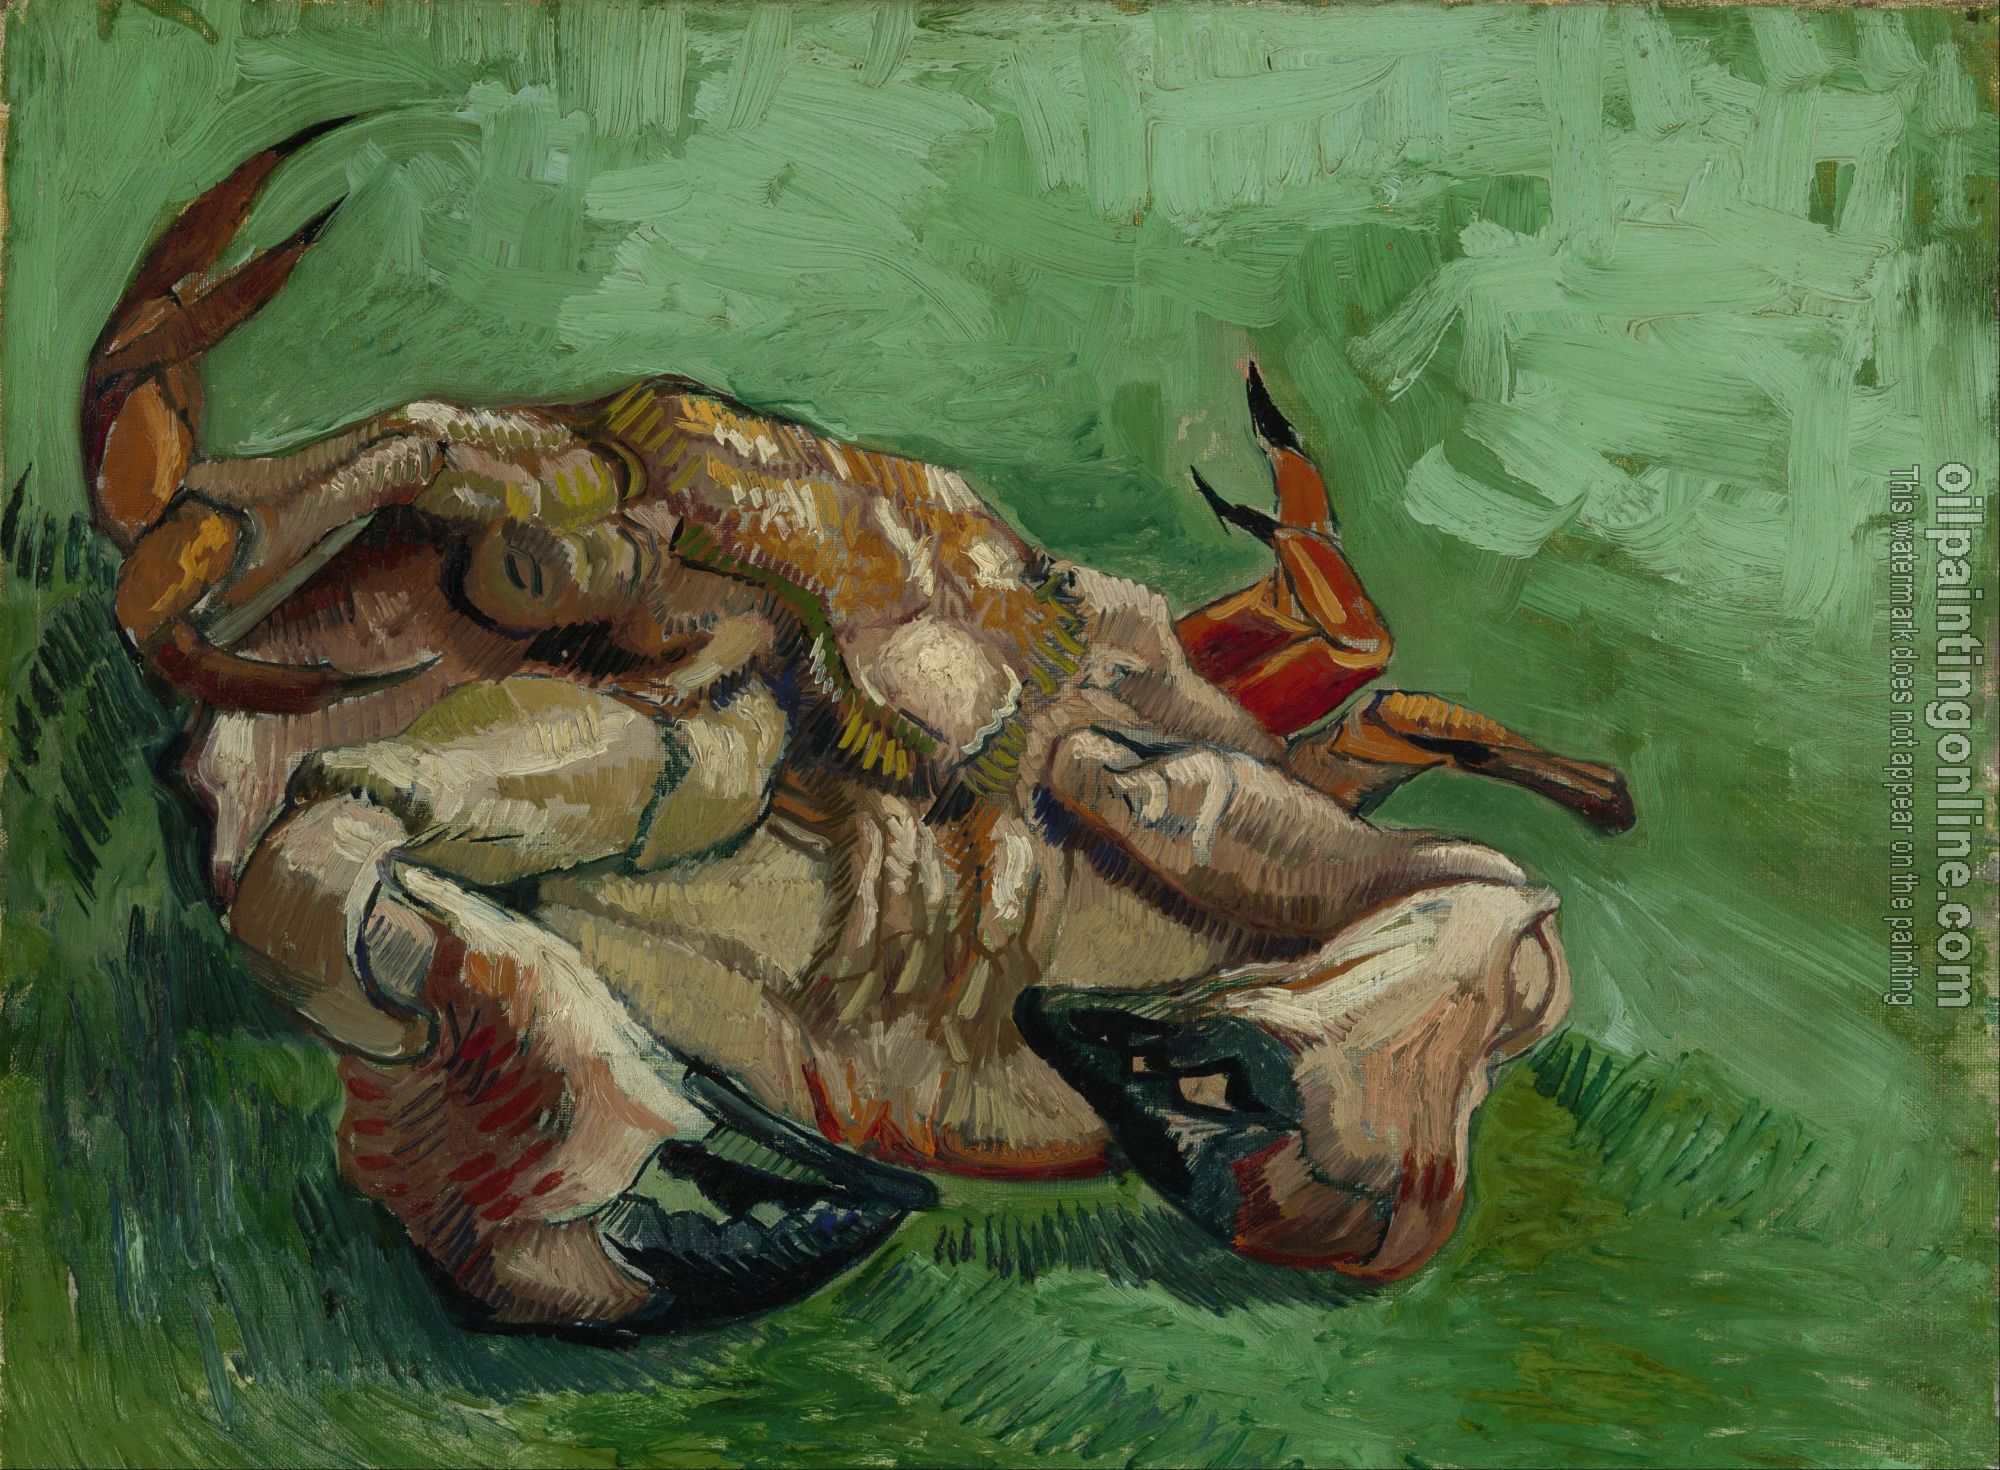 Gogh, Vincent van - A crab upside down